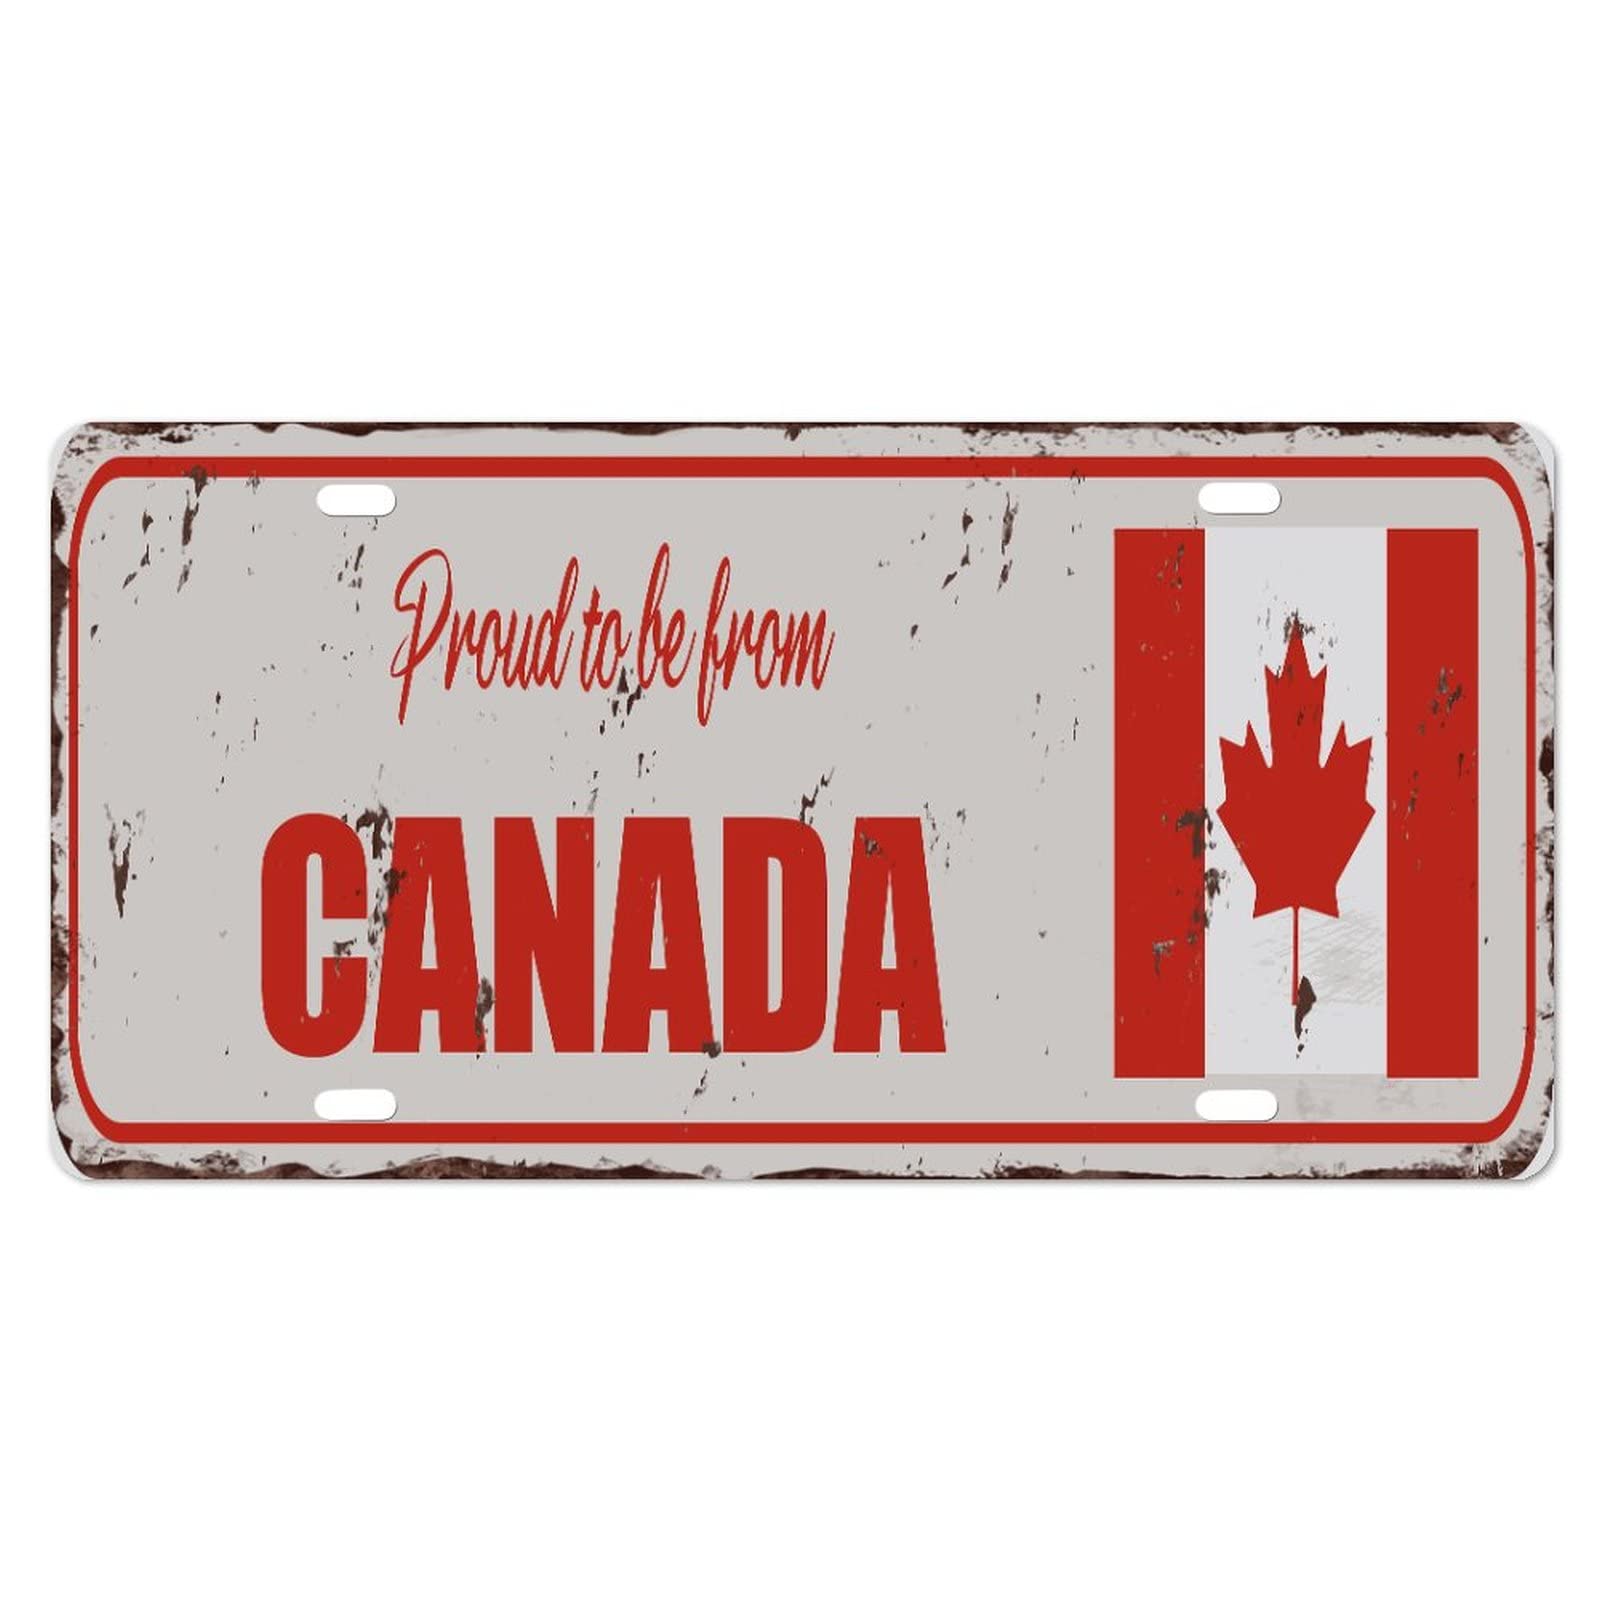 Yelolyio Kanada-Kennzeichen für die Vorderseite des Autos, Größe 15,2 x 30,5 cm, rostfrei, stolz auf Kanada, Metall-Kennzeichen, kanadische Nationalflagge, Aluminium, Neuheit, Nummernschild, von Yelolyio